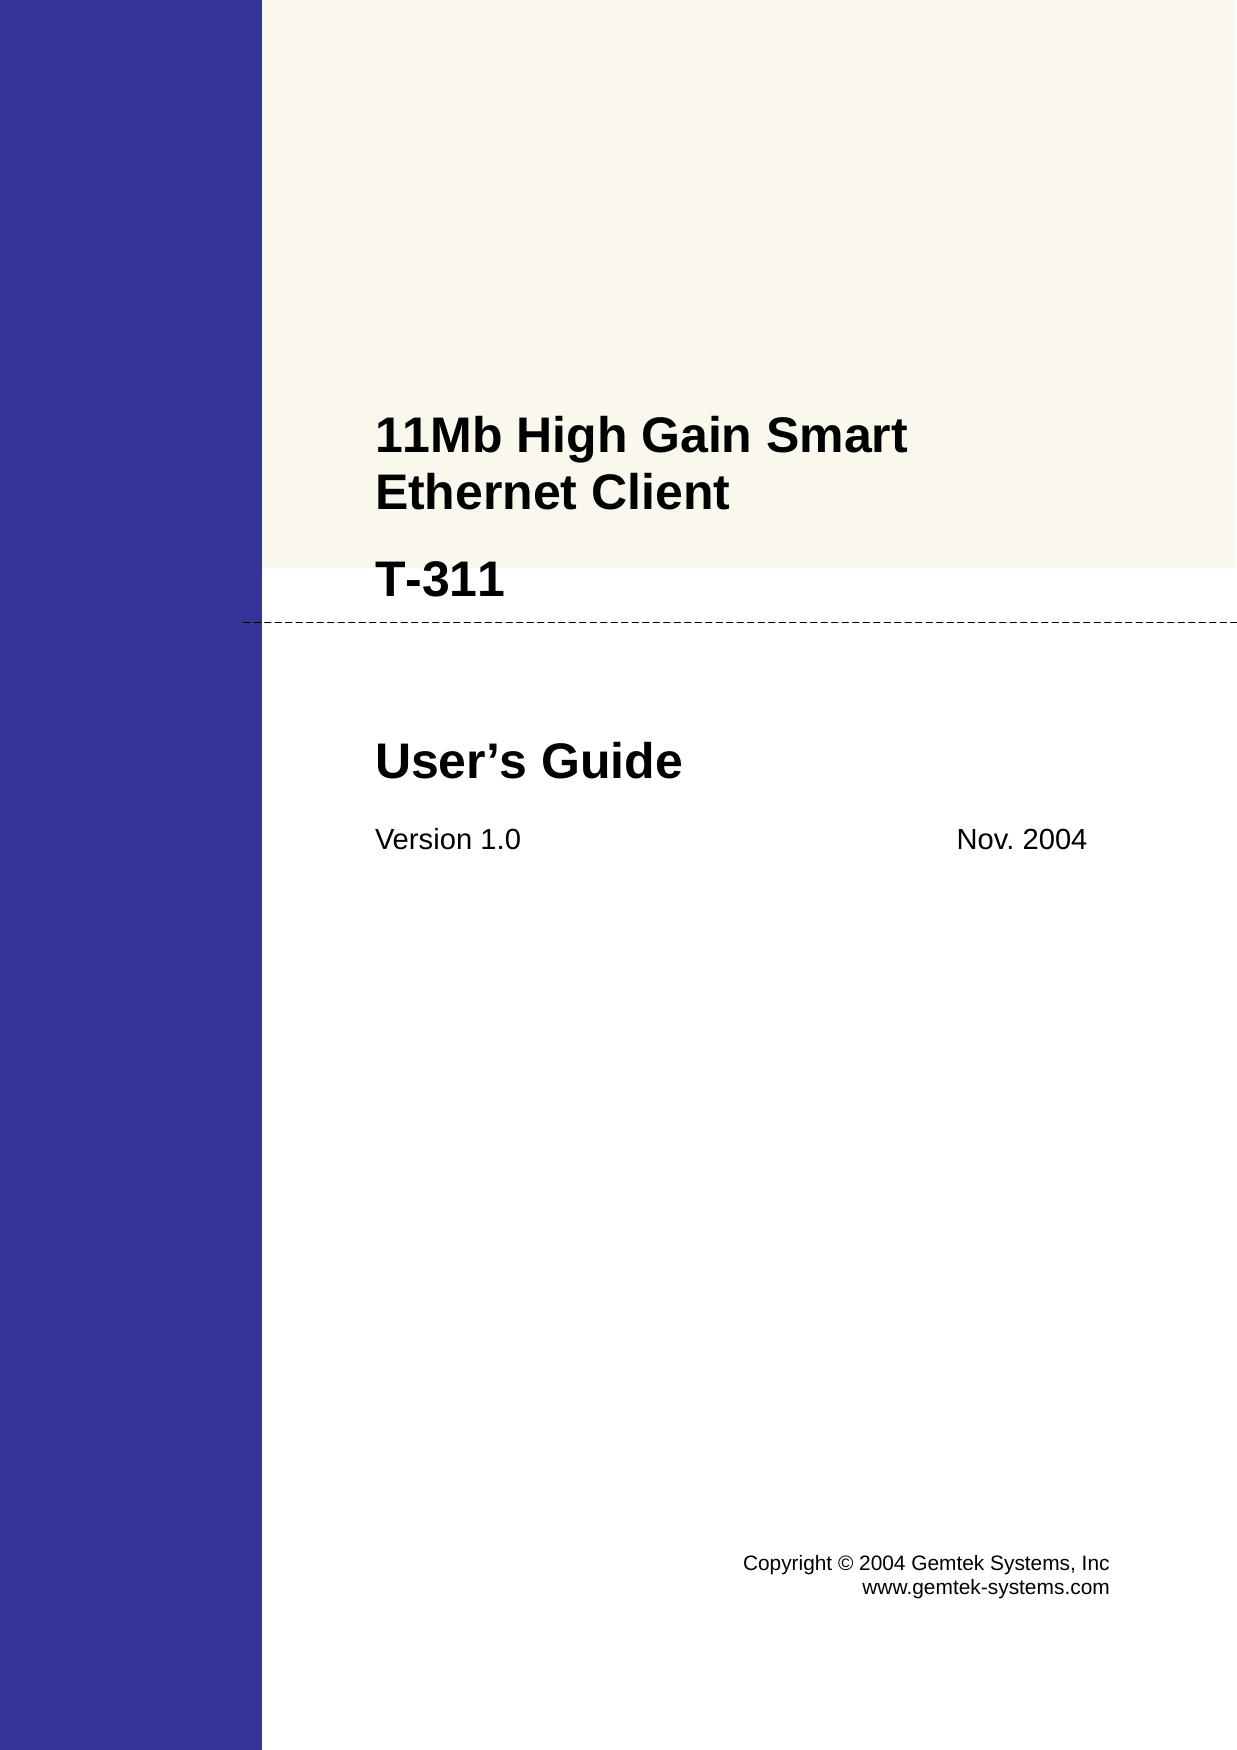    11Mb High Gain Smart Ethernet Client  T-311  User’s Guide  Version 1.0 Nov. 2004 Copyright © 2004 Gemtek Systems, Incwww.gemtek-systems.com